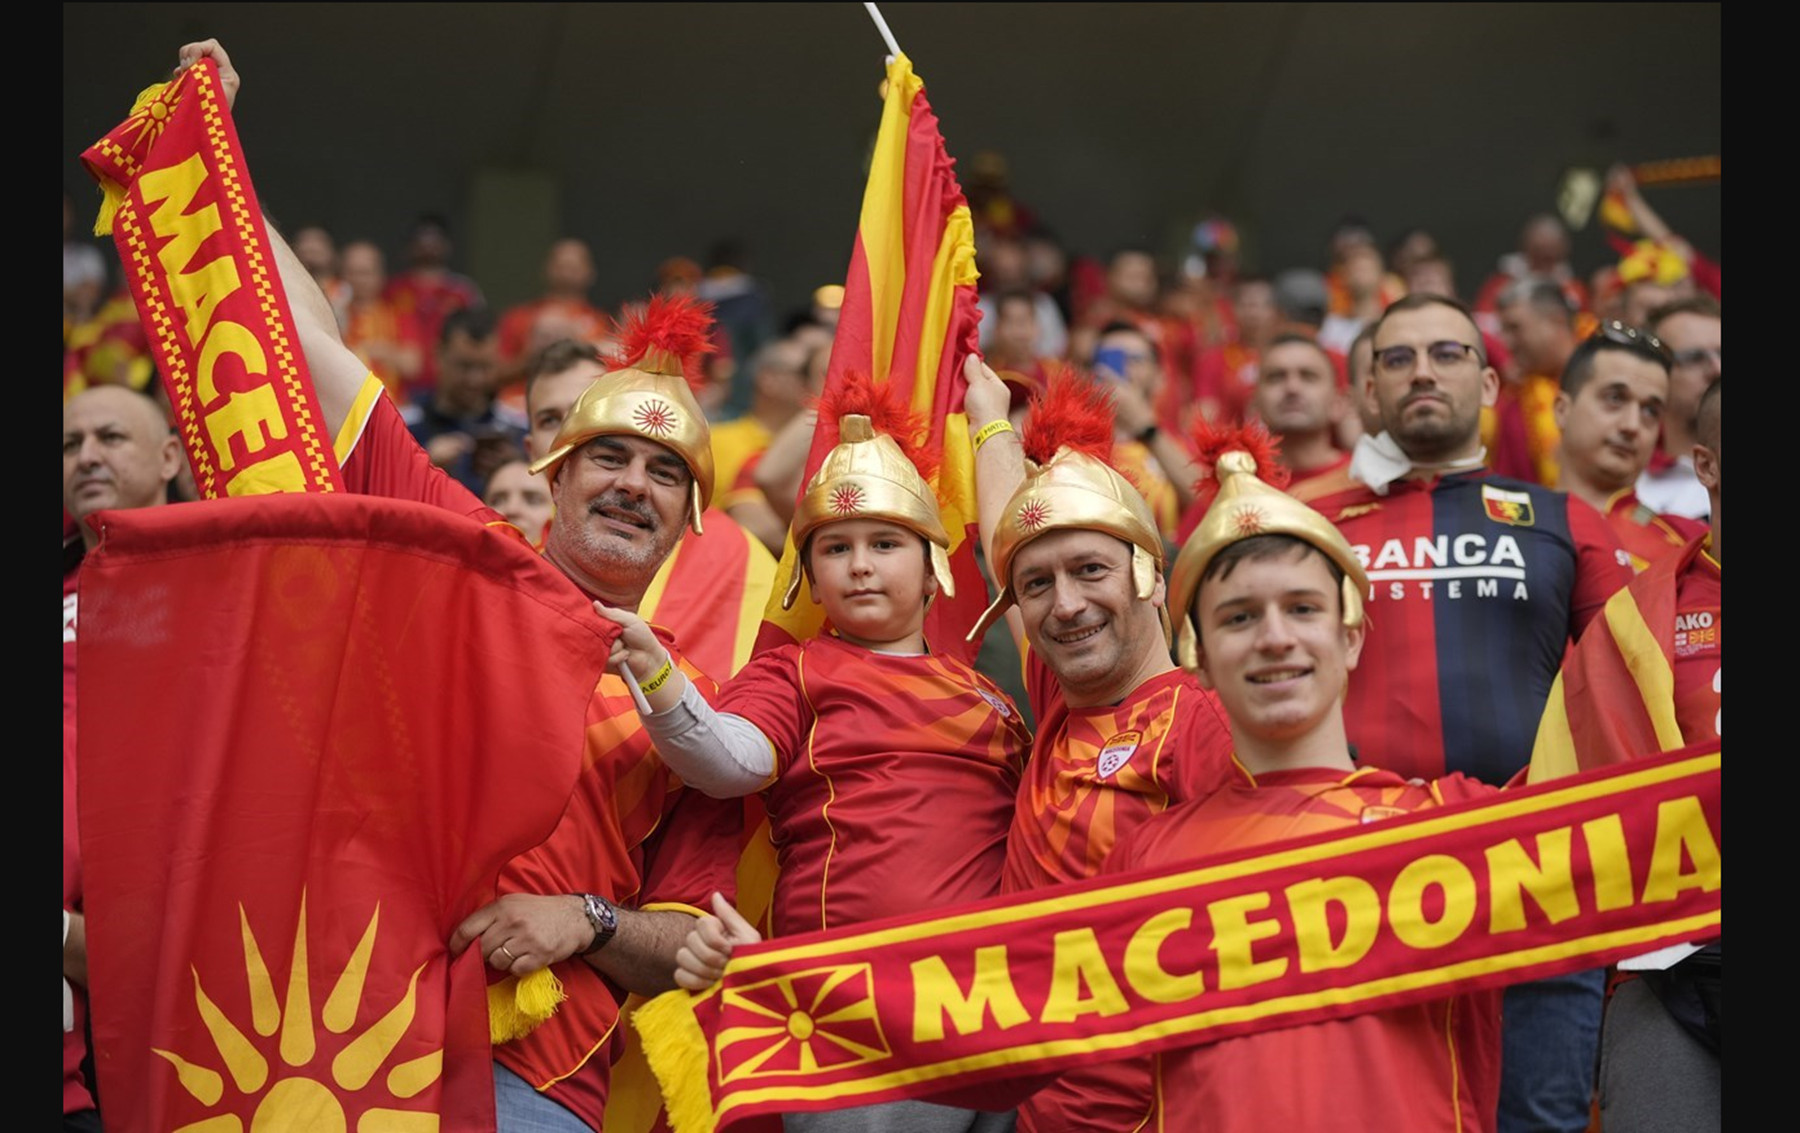 Σκόπια Euro: Πρόκληση και από την κρατική τηλεόραση – Αποκαλούσαν τη χώρα “Μακεδονία”